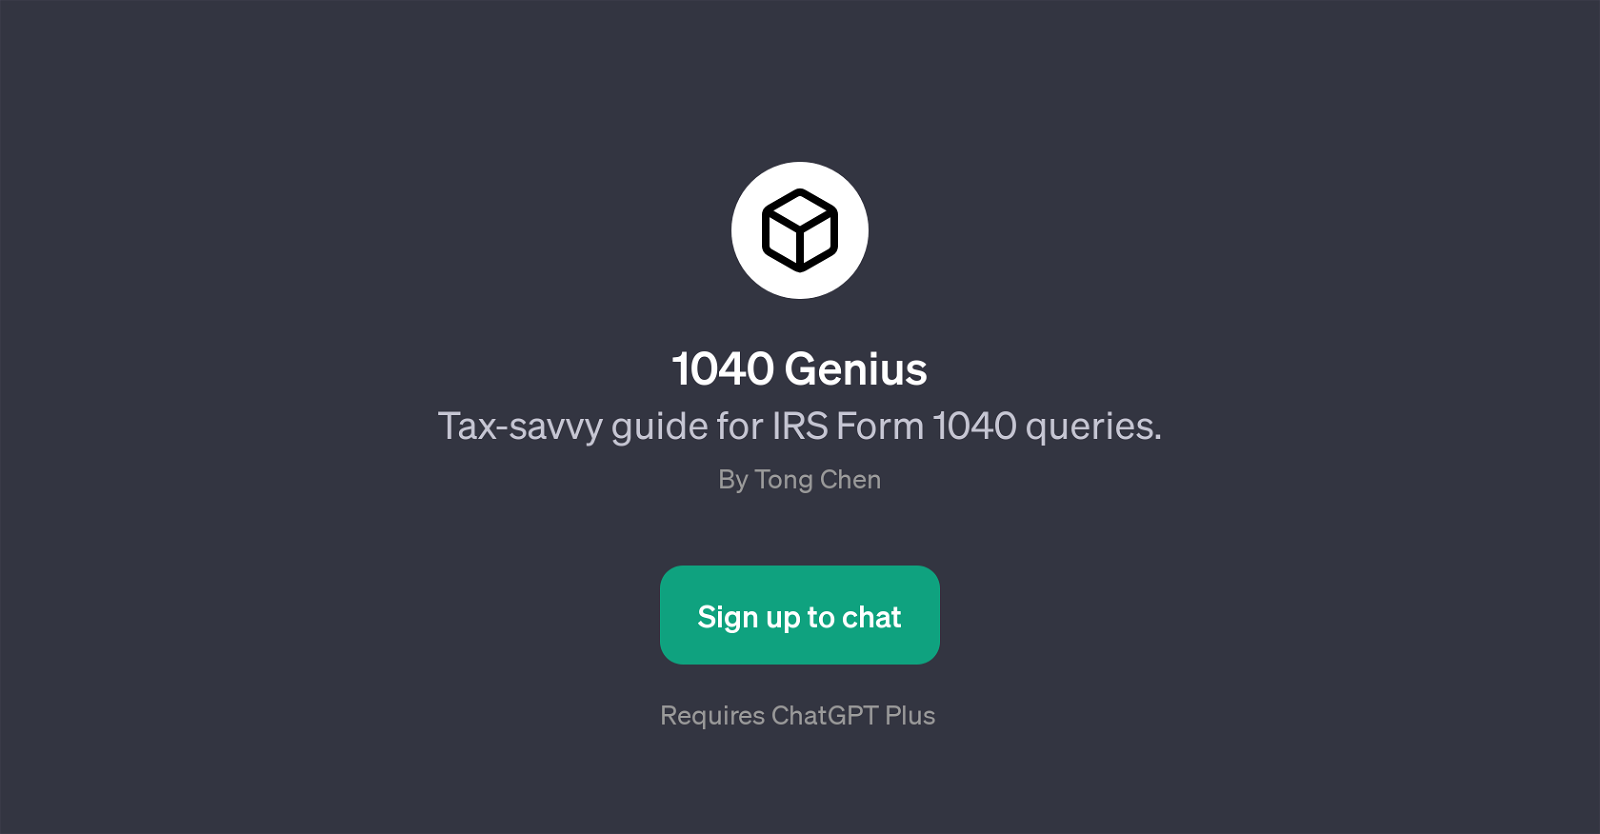 1040 Genius website